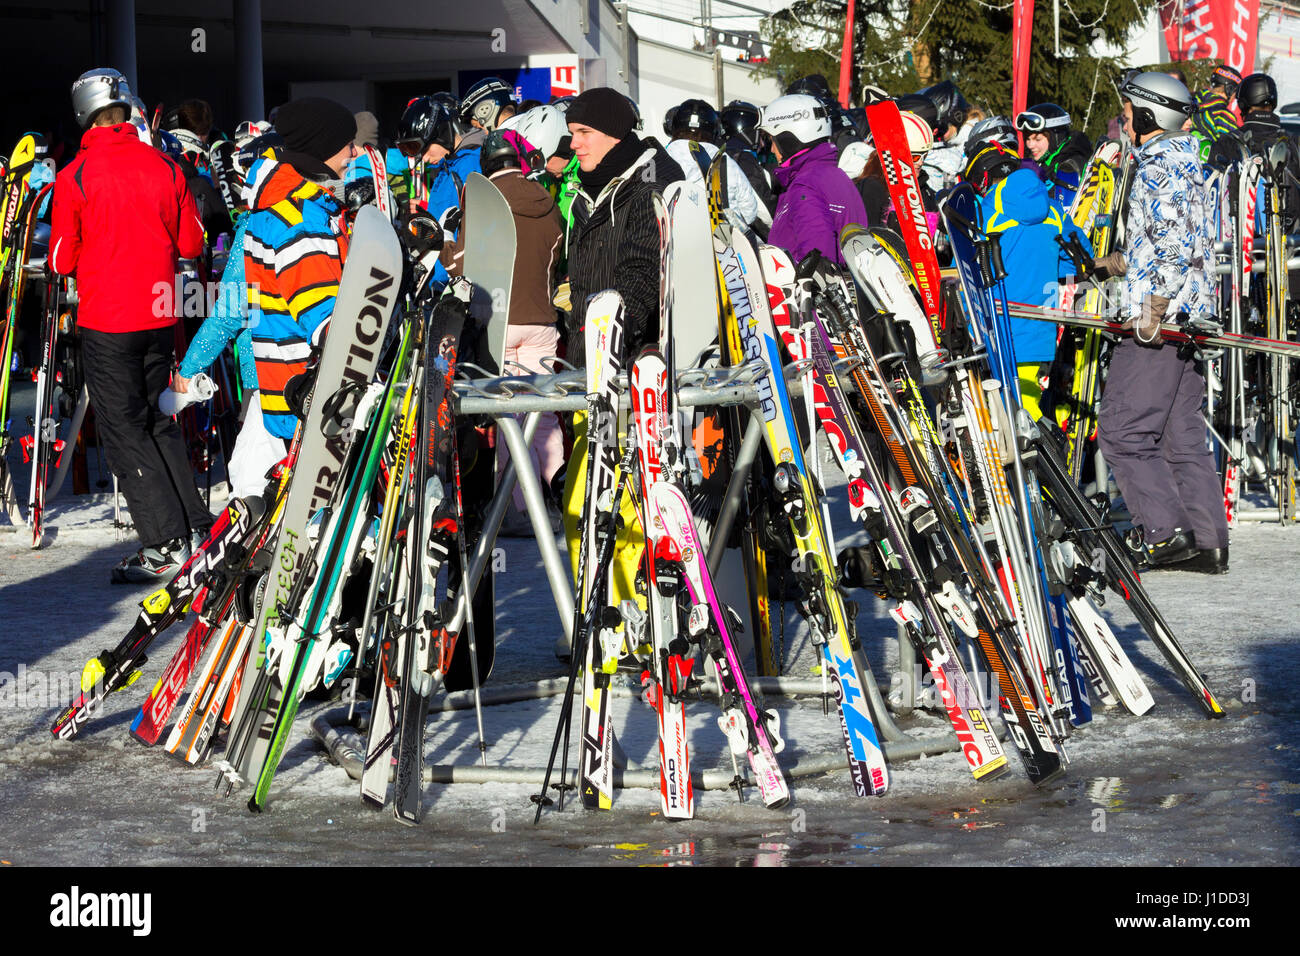 FLACHAU, AUTRICHE - DEC 29, 2012 : Les gens de les pistes de ski dans la station de ski de Flachau, dans les Alpes autrichiennes. Ces pistes sont une partie de l'Arm Banque D'Images